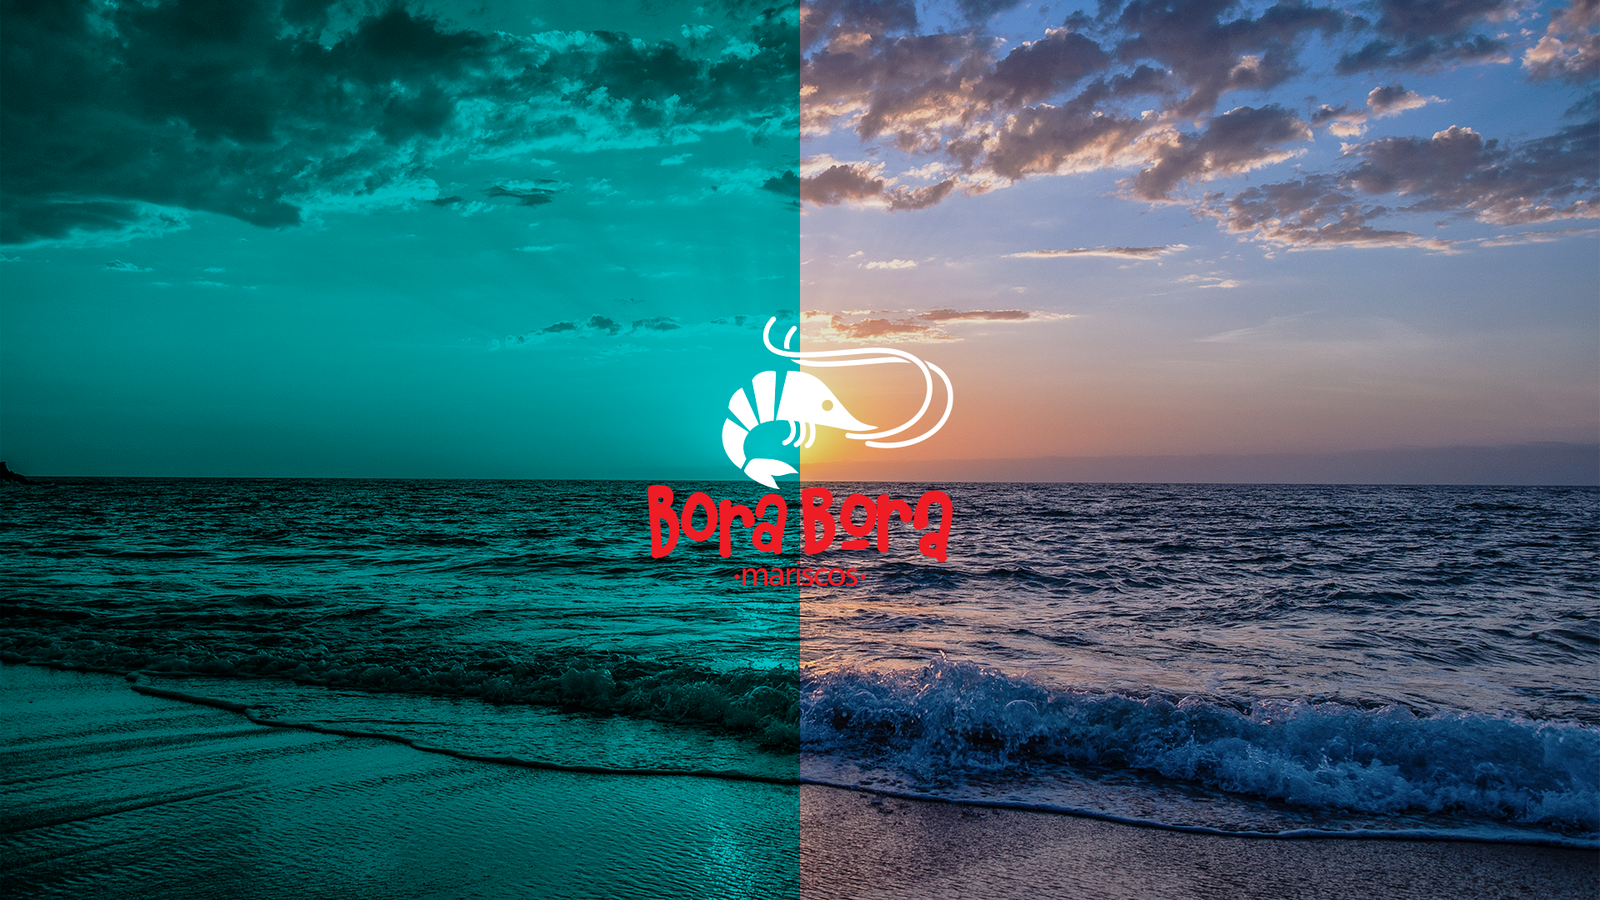 Branding Bora Bora